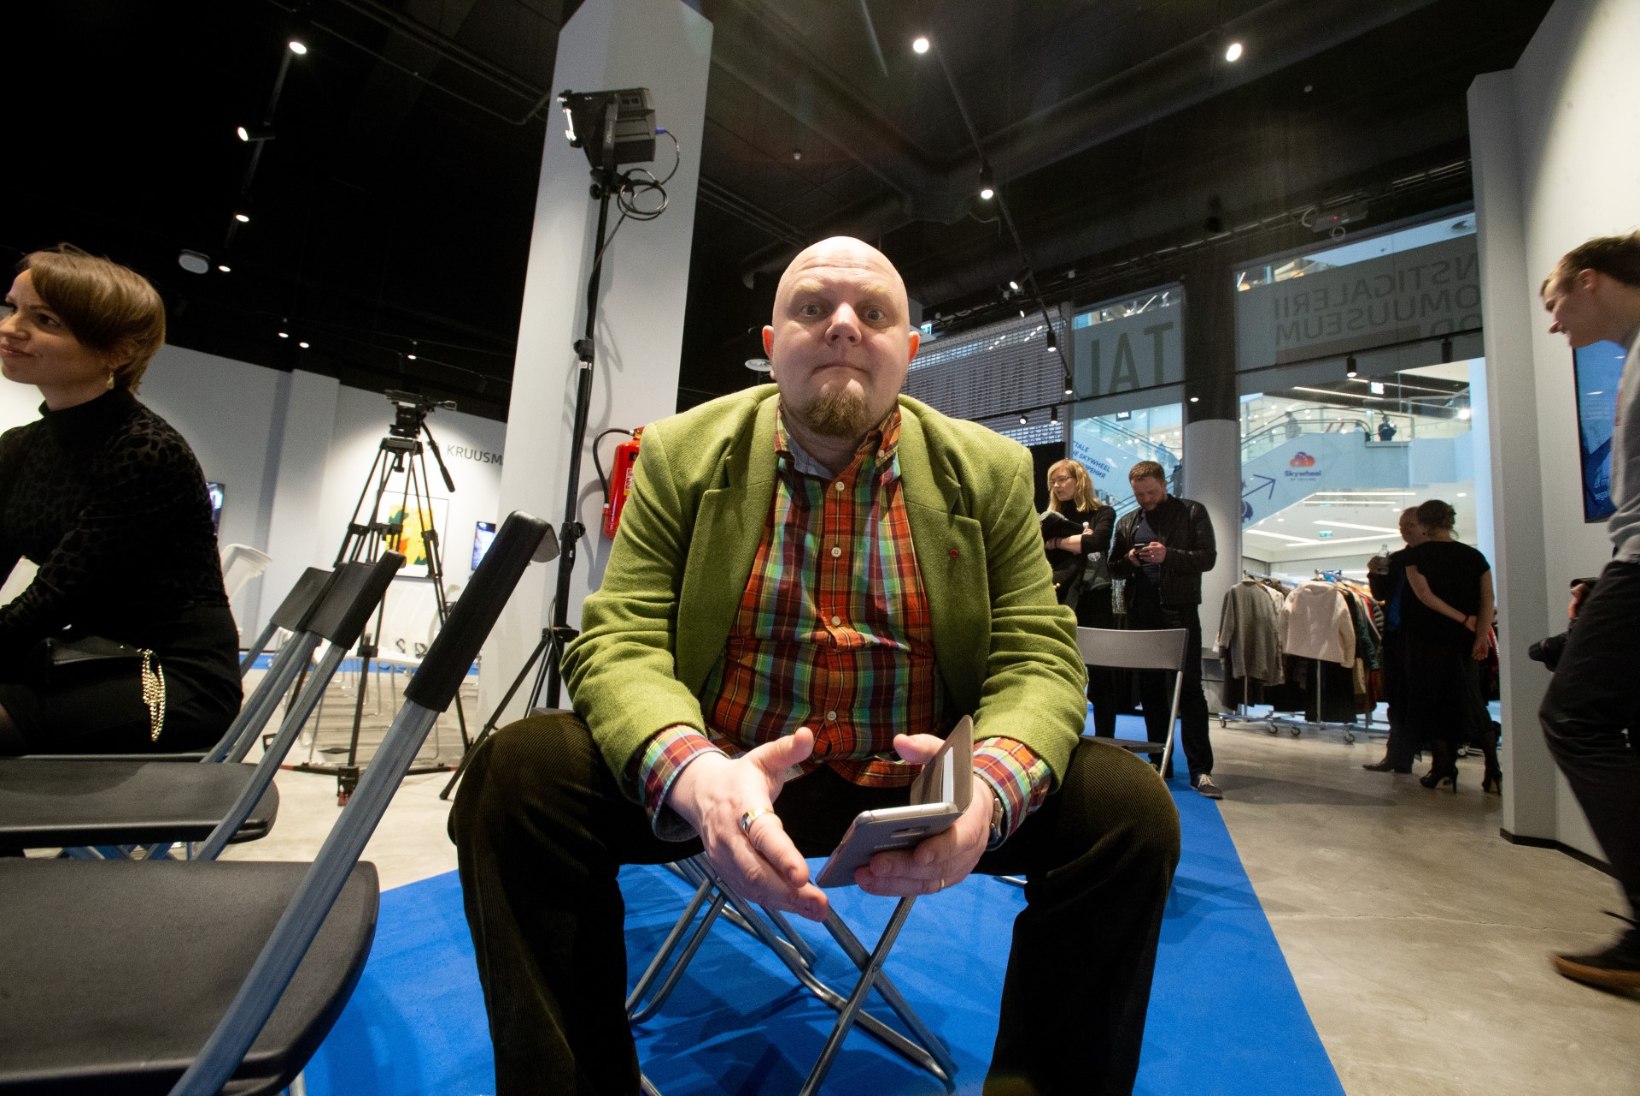 GALERII | Kalev Mark Kostabi avas Tallinnas oma galerii